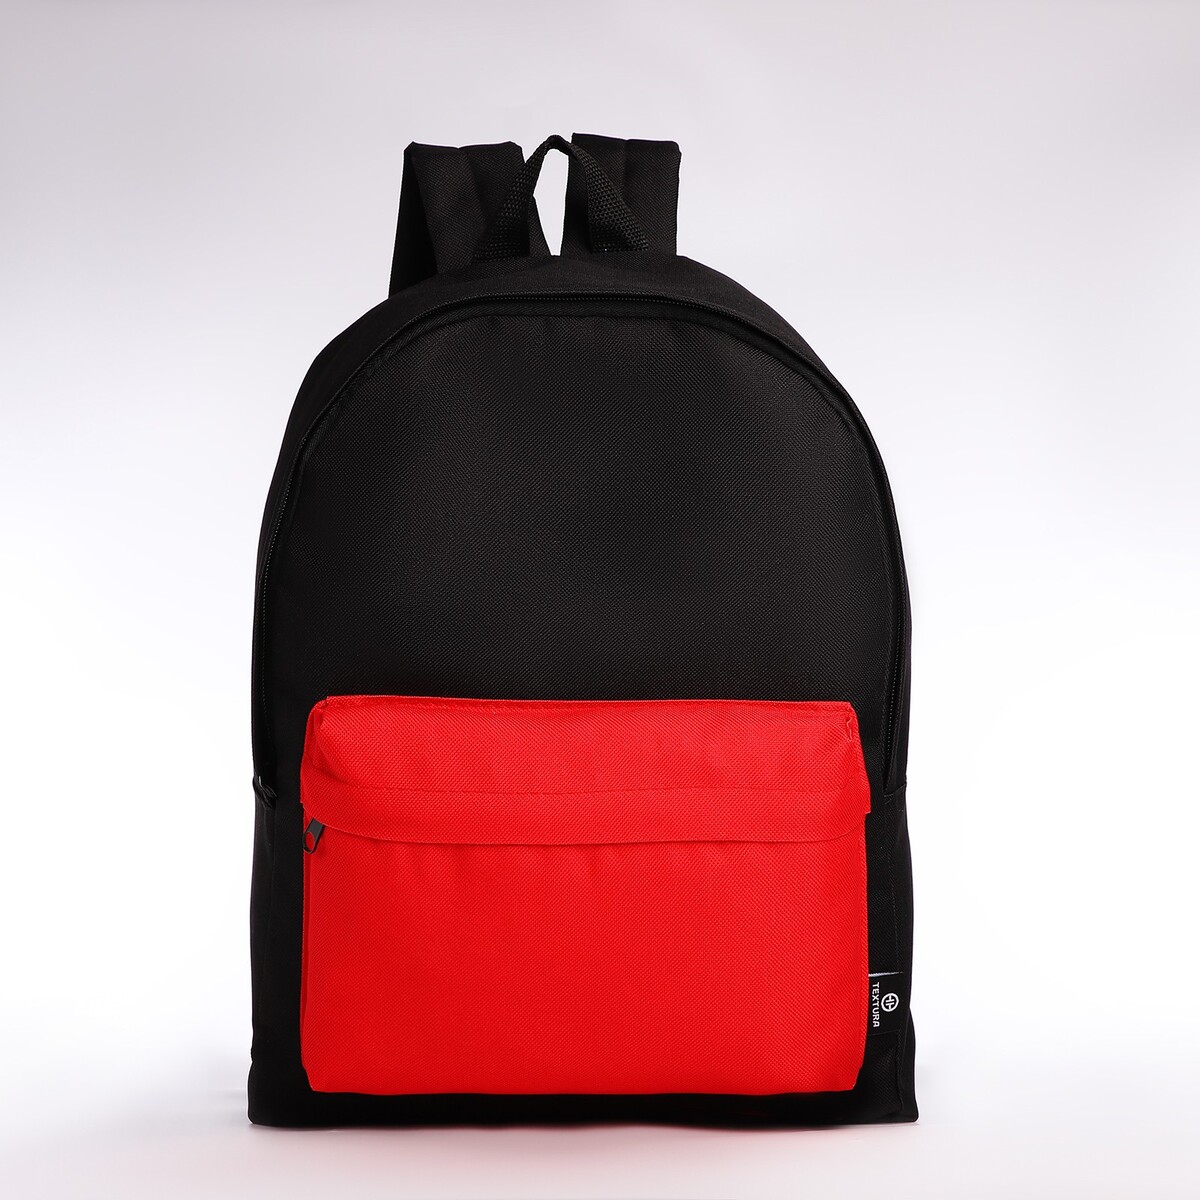 Спортивный рюкзак textura, 20 литров, цвет черный/красный рюкзак wenger next crango 611980 16 красный 27 л